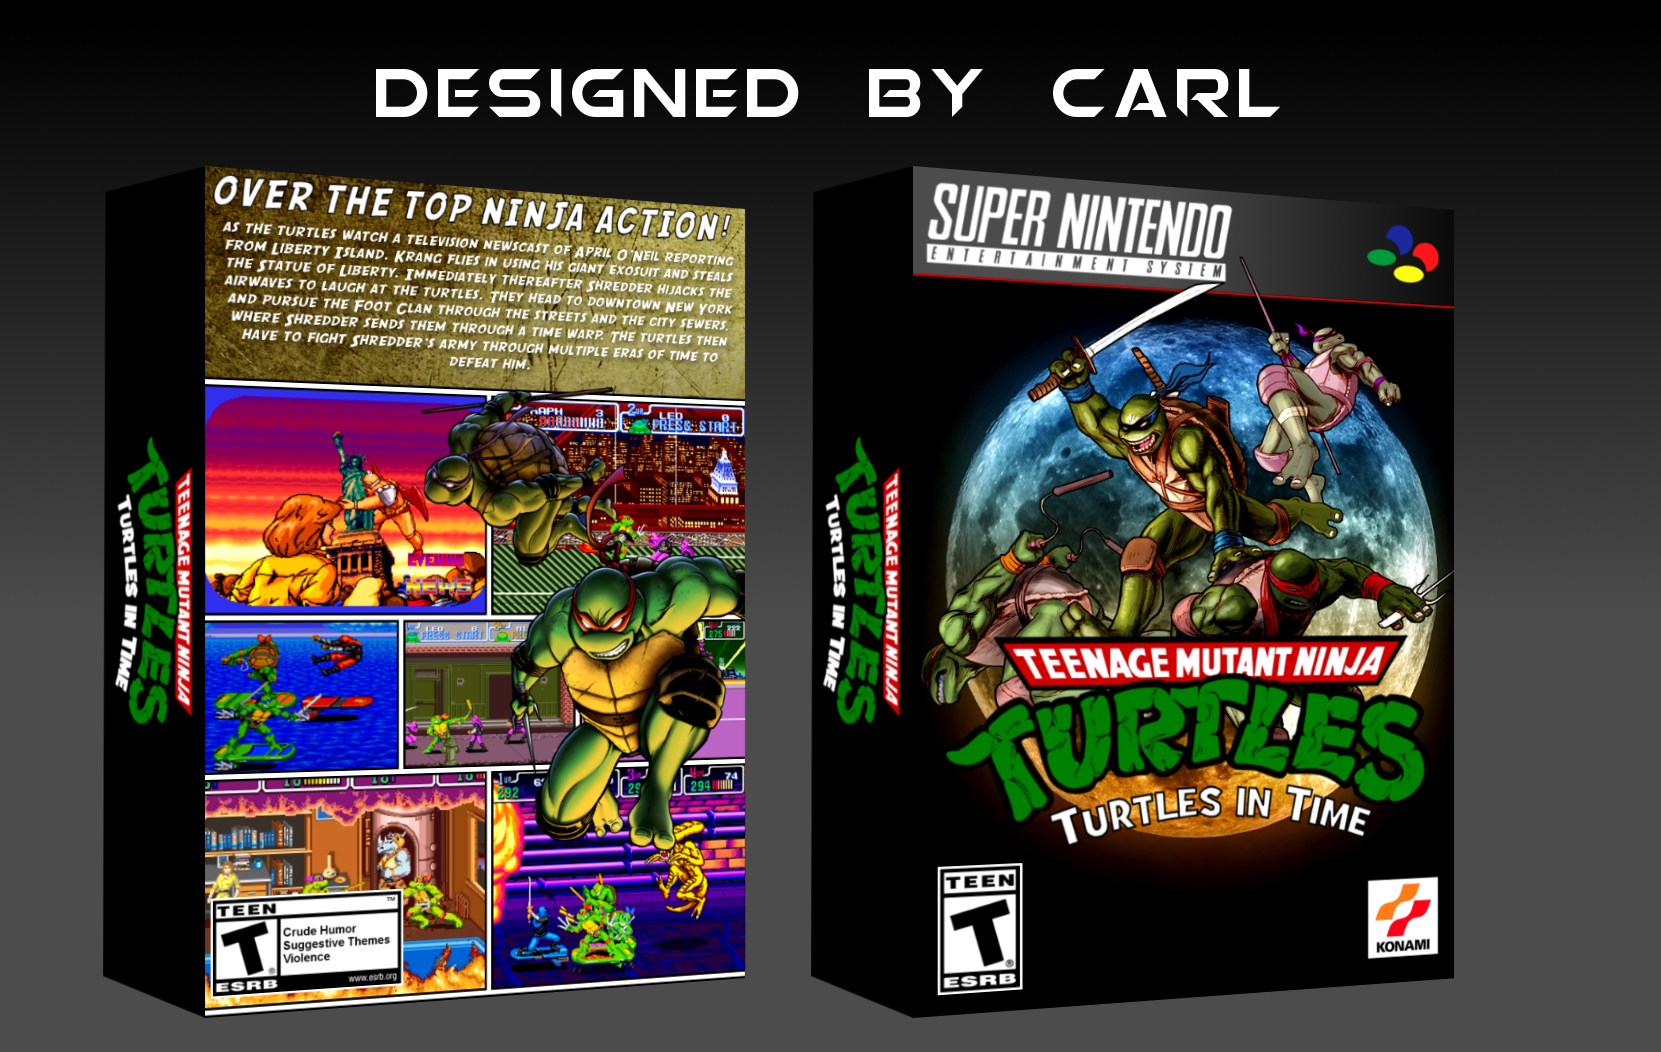 Teenage Mutant Ninja Turtles: Turtles in Time box cover